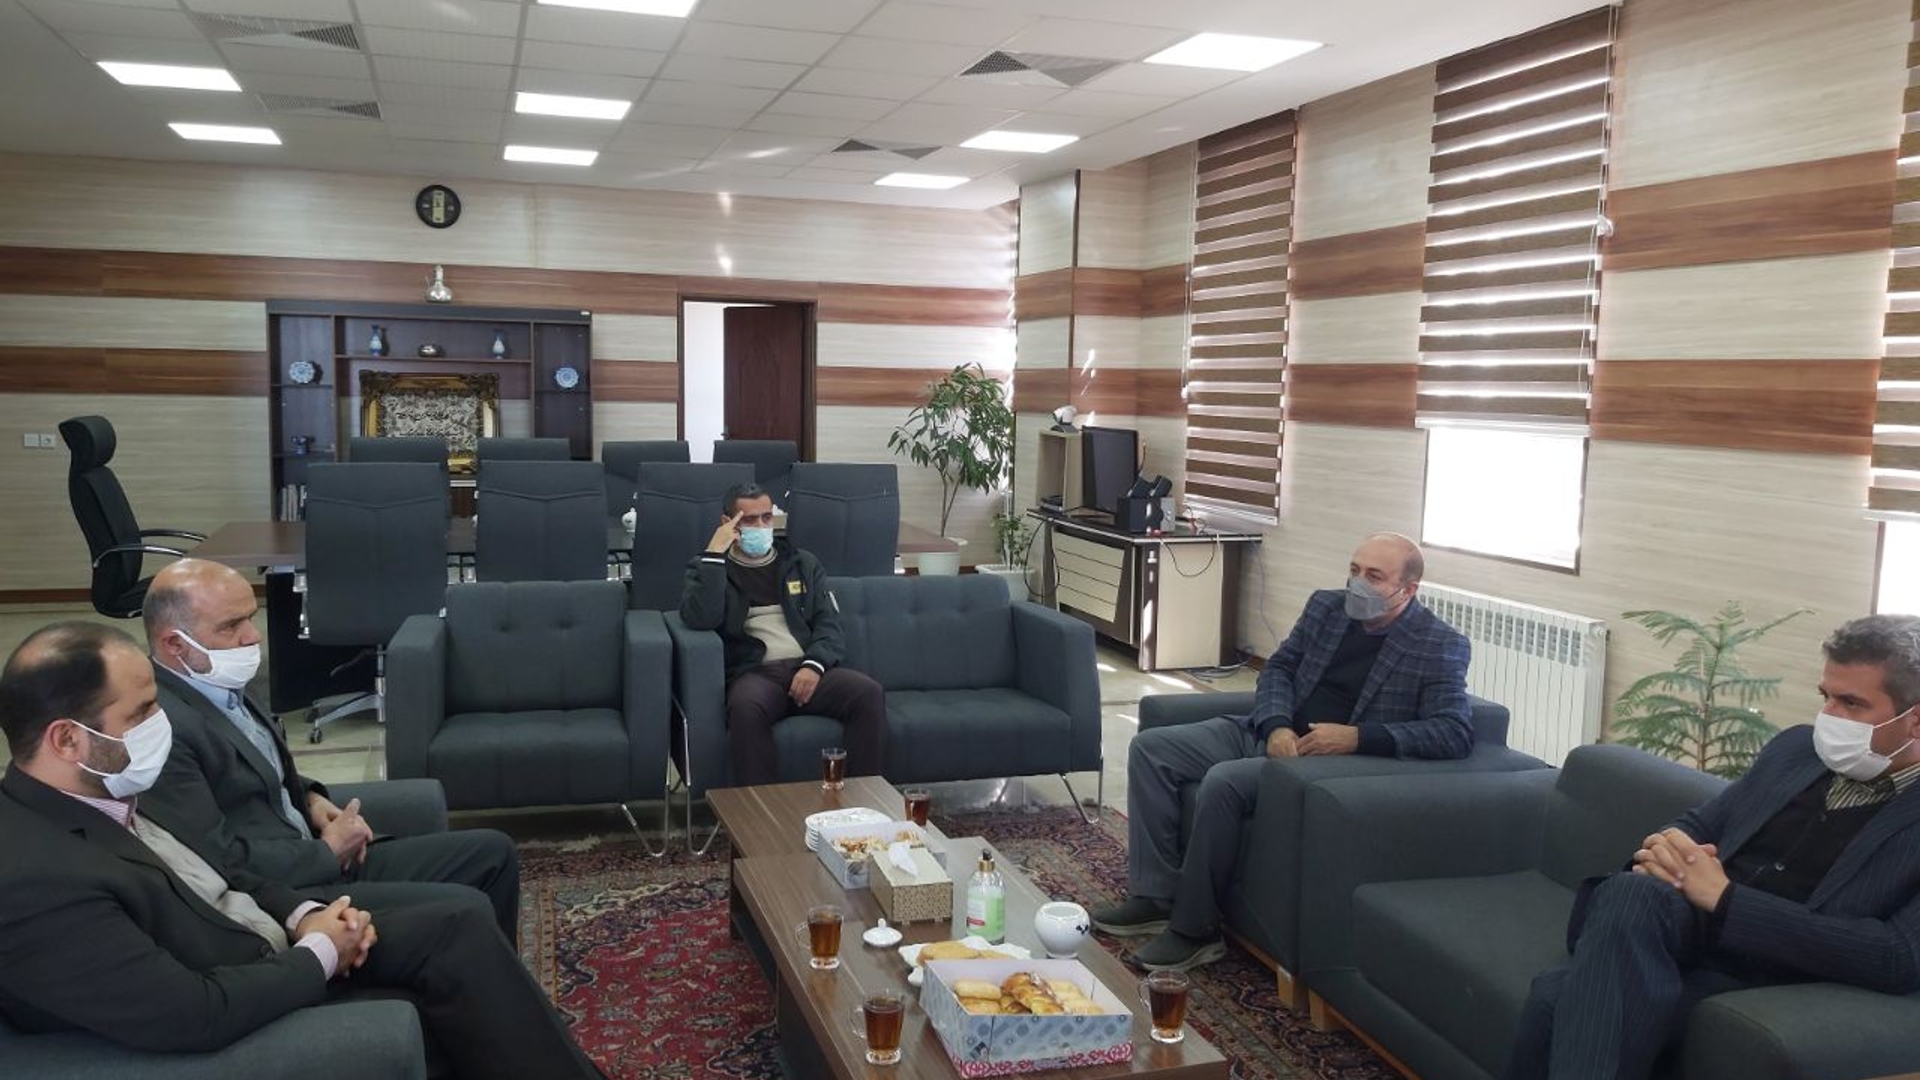 دیدار آشتیانی مدیر جهاد کشاورزی شهرستان به اتفاق تعدادی از پرسنل با علی اکبر فراهانی سرپرست فرمانداری آشتیان